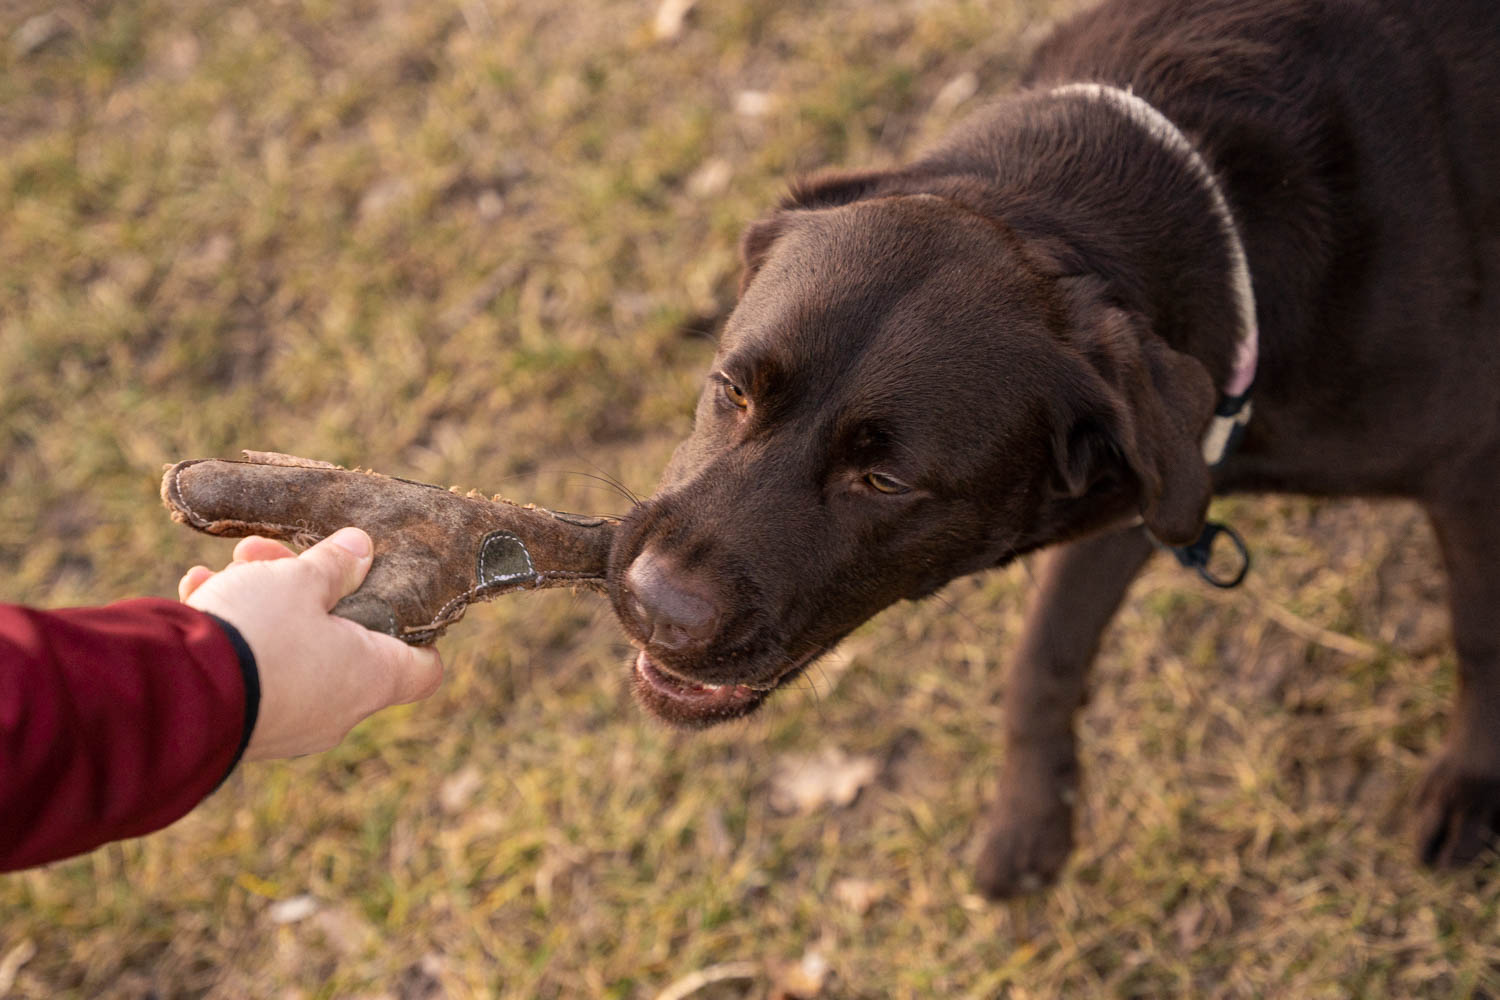 Beim doppelten Rückruf hat dein Hund, wie der Name sagt, zwei Signale um zurückgerufen zu werden. Das erste Kommando ist ein Umorientierungssignal oder Ankersignal und das Zweite das Rückrufsignal. Dieses Bild zeigt einen Hunde, welcher mit einem Spielzeug im Training belohnt wird.